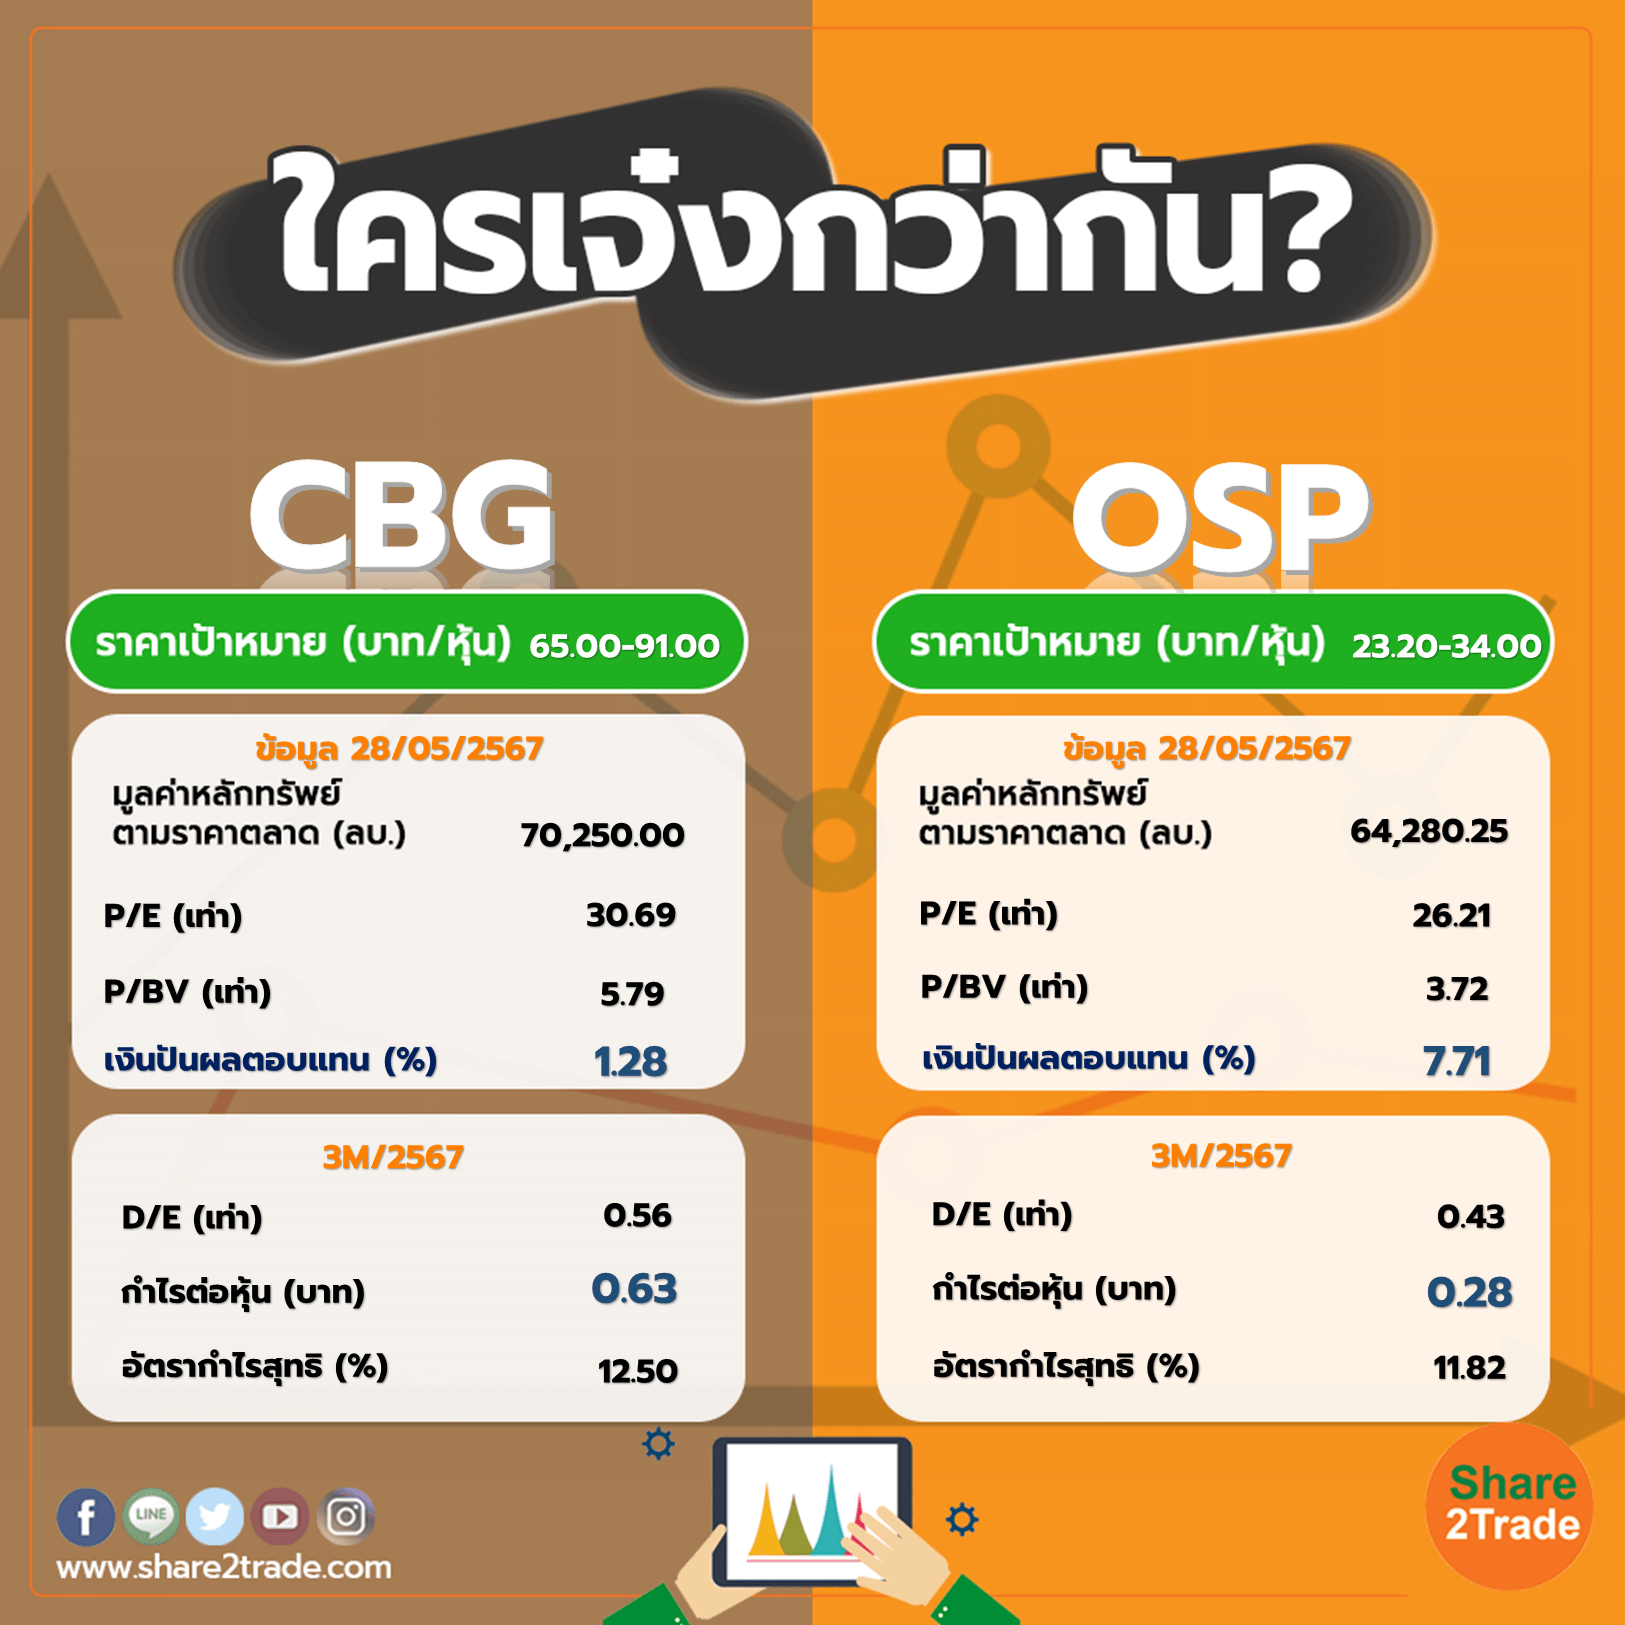 ใครเจ๋งกว่ากัน "CBG" VS "OSP"